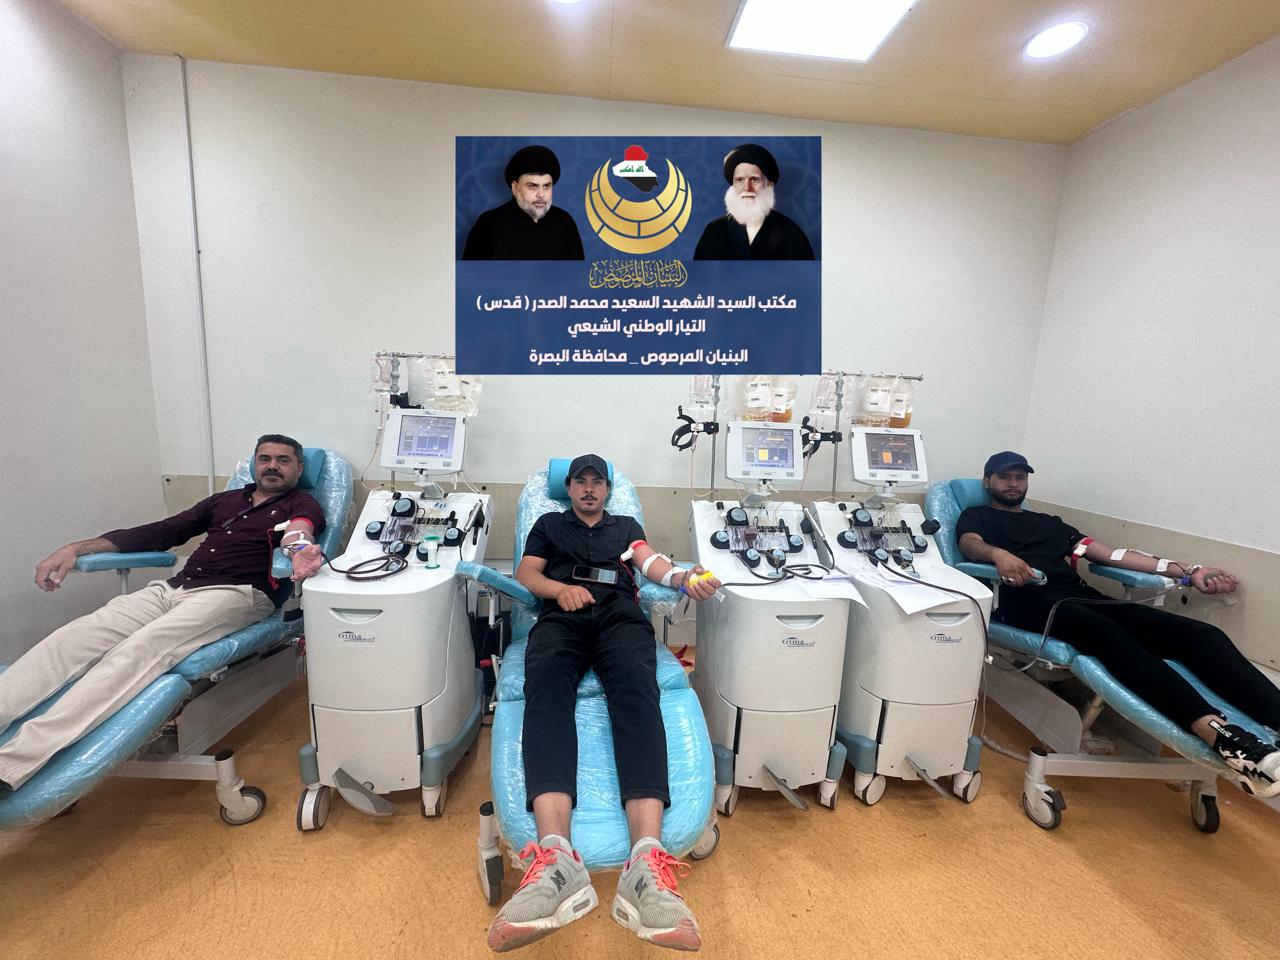 بأشراف البنيان المرصوص في البصرة  التيار الوطني الشيعي يلبي مناشدة لمستشفى الطفل المركزي وينظم حملة تبرع (بلازما الدم) المفتوحة لعلاج اطفال العراق وتستمر لعدة أيام.